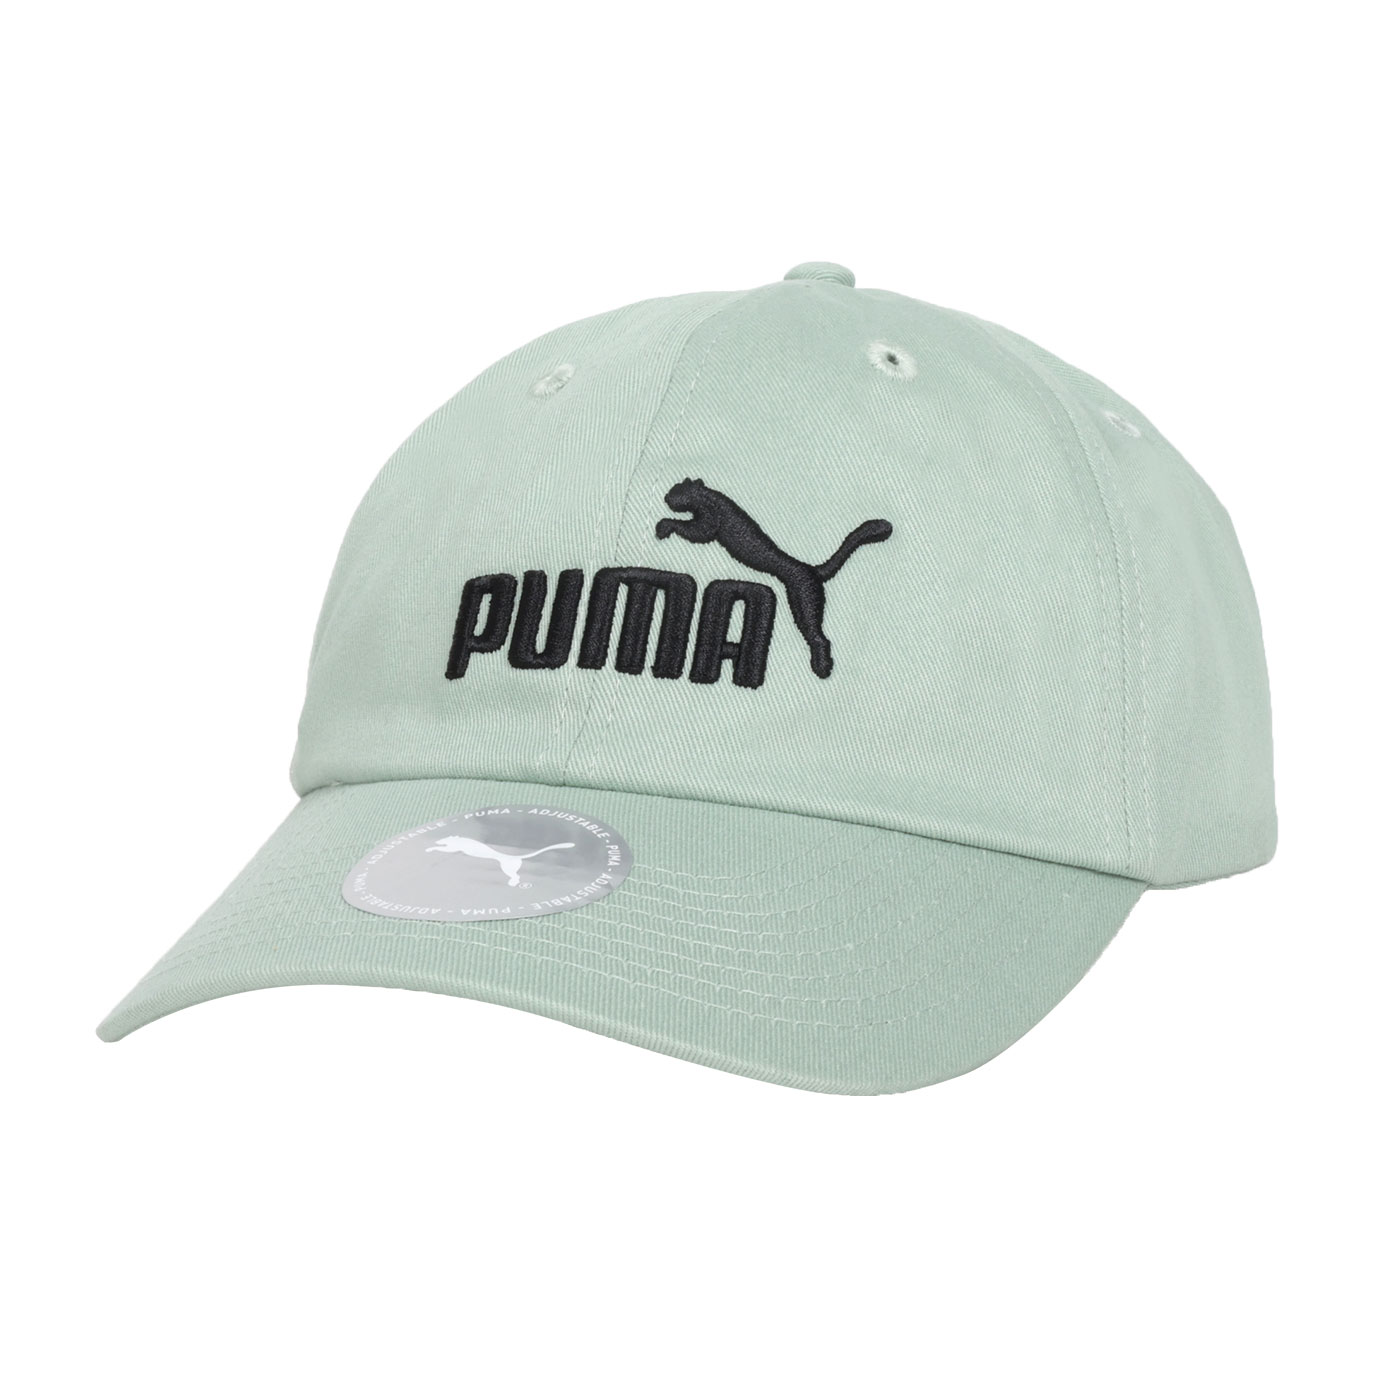 PUMA 基本系列 No.1 棒球帽  02435711 - 綠黑